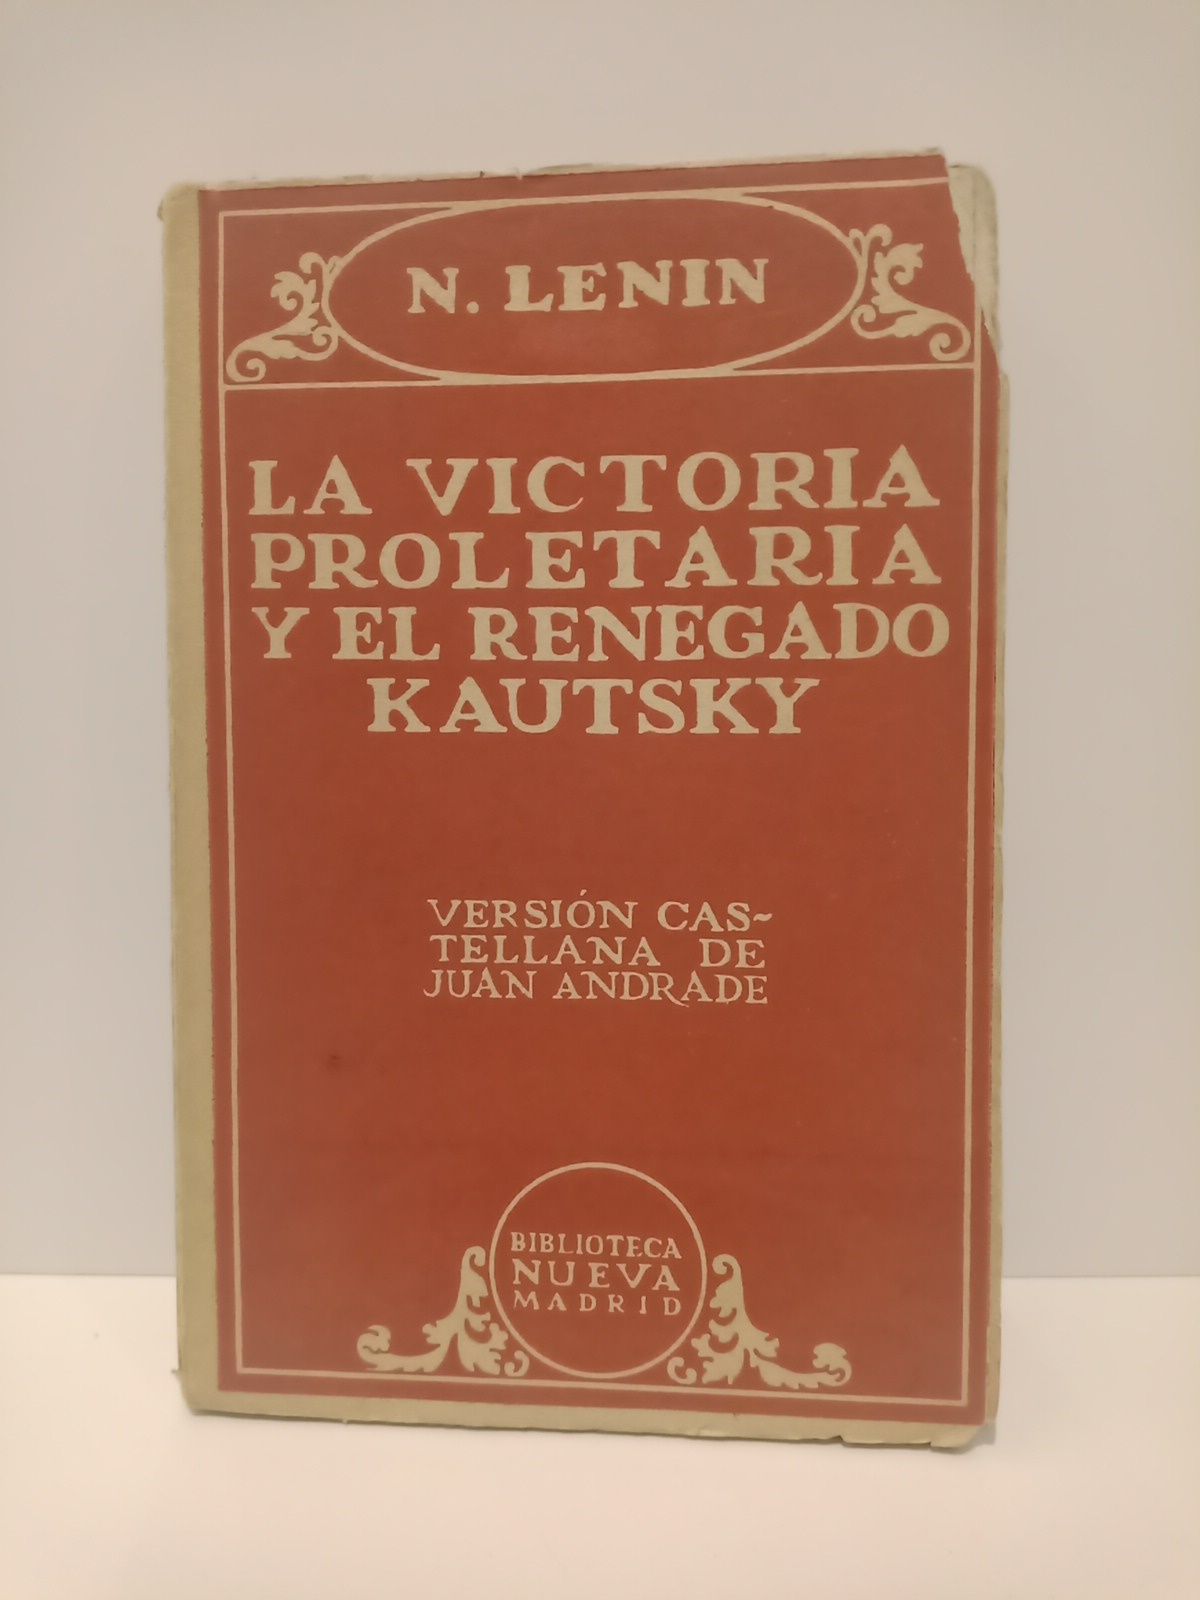 LENIN, N. - La victoria proletaria y el renegado Kautsky /  Versin castellana de Juan Andrade